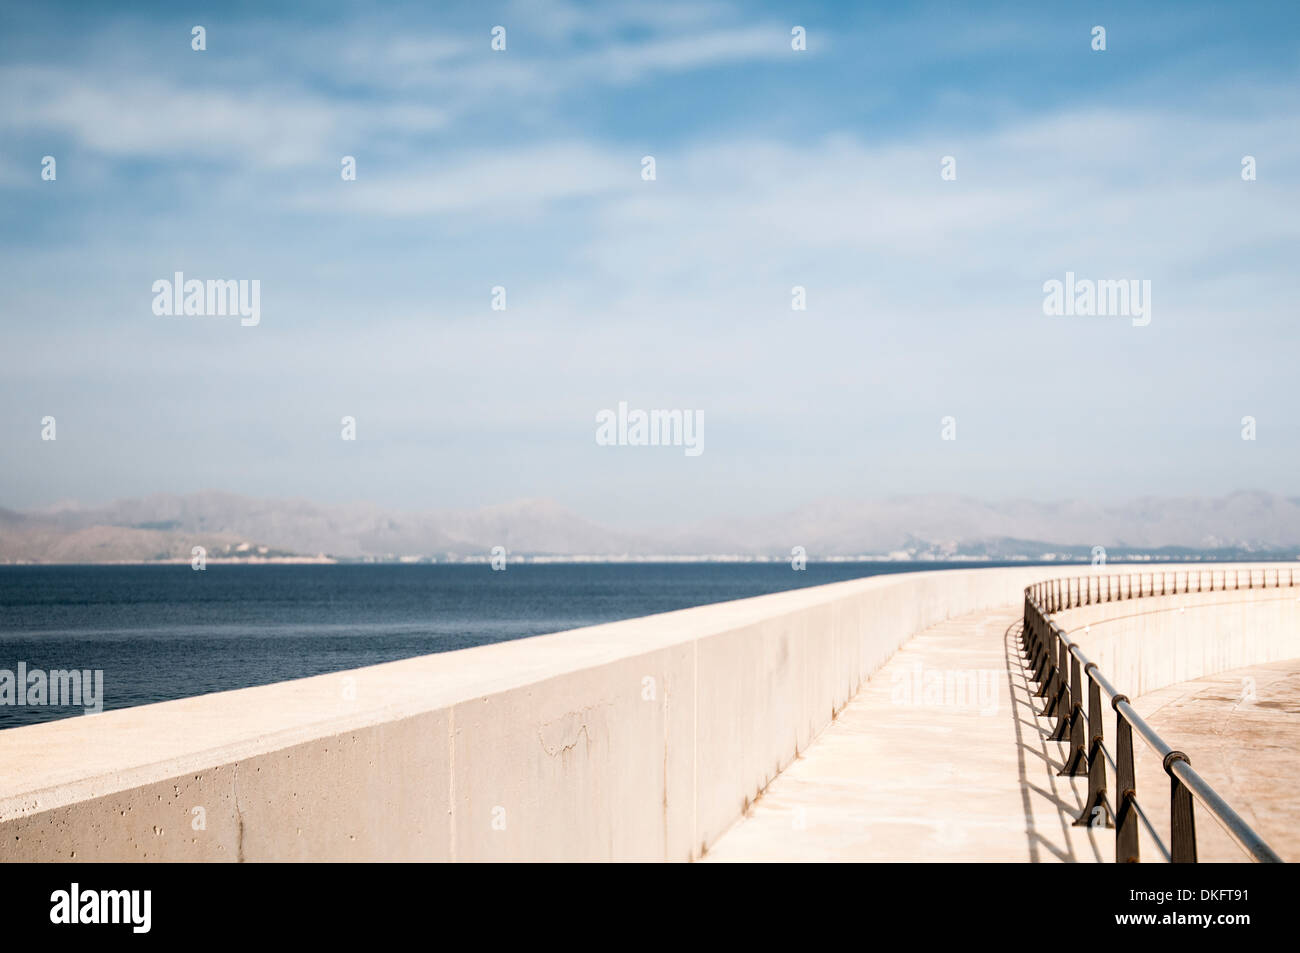 Sea wall, Majorca, Spain Stock Photo